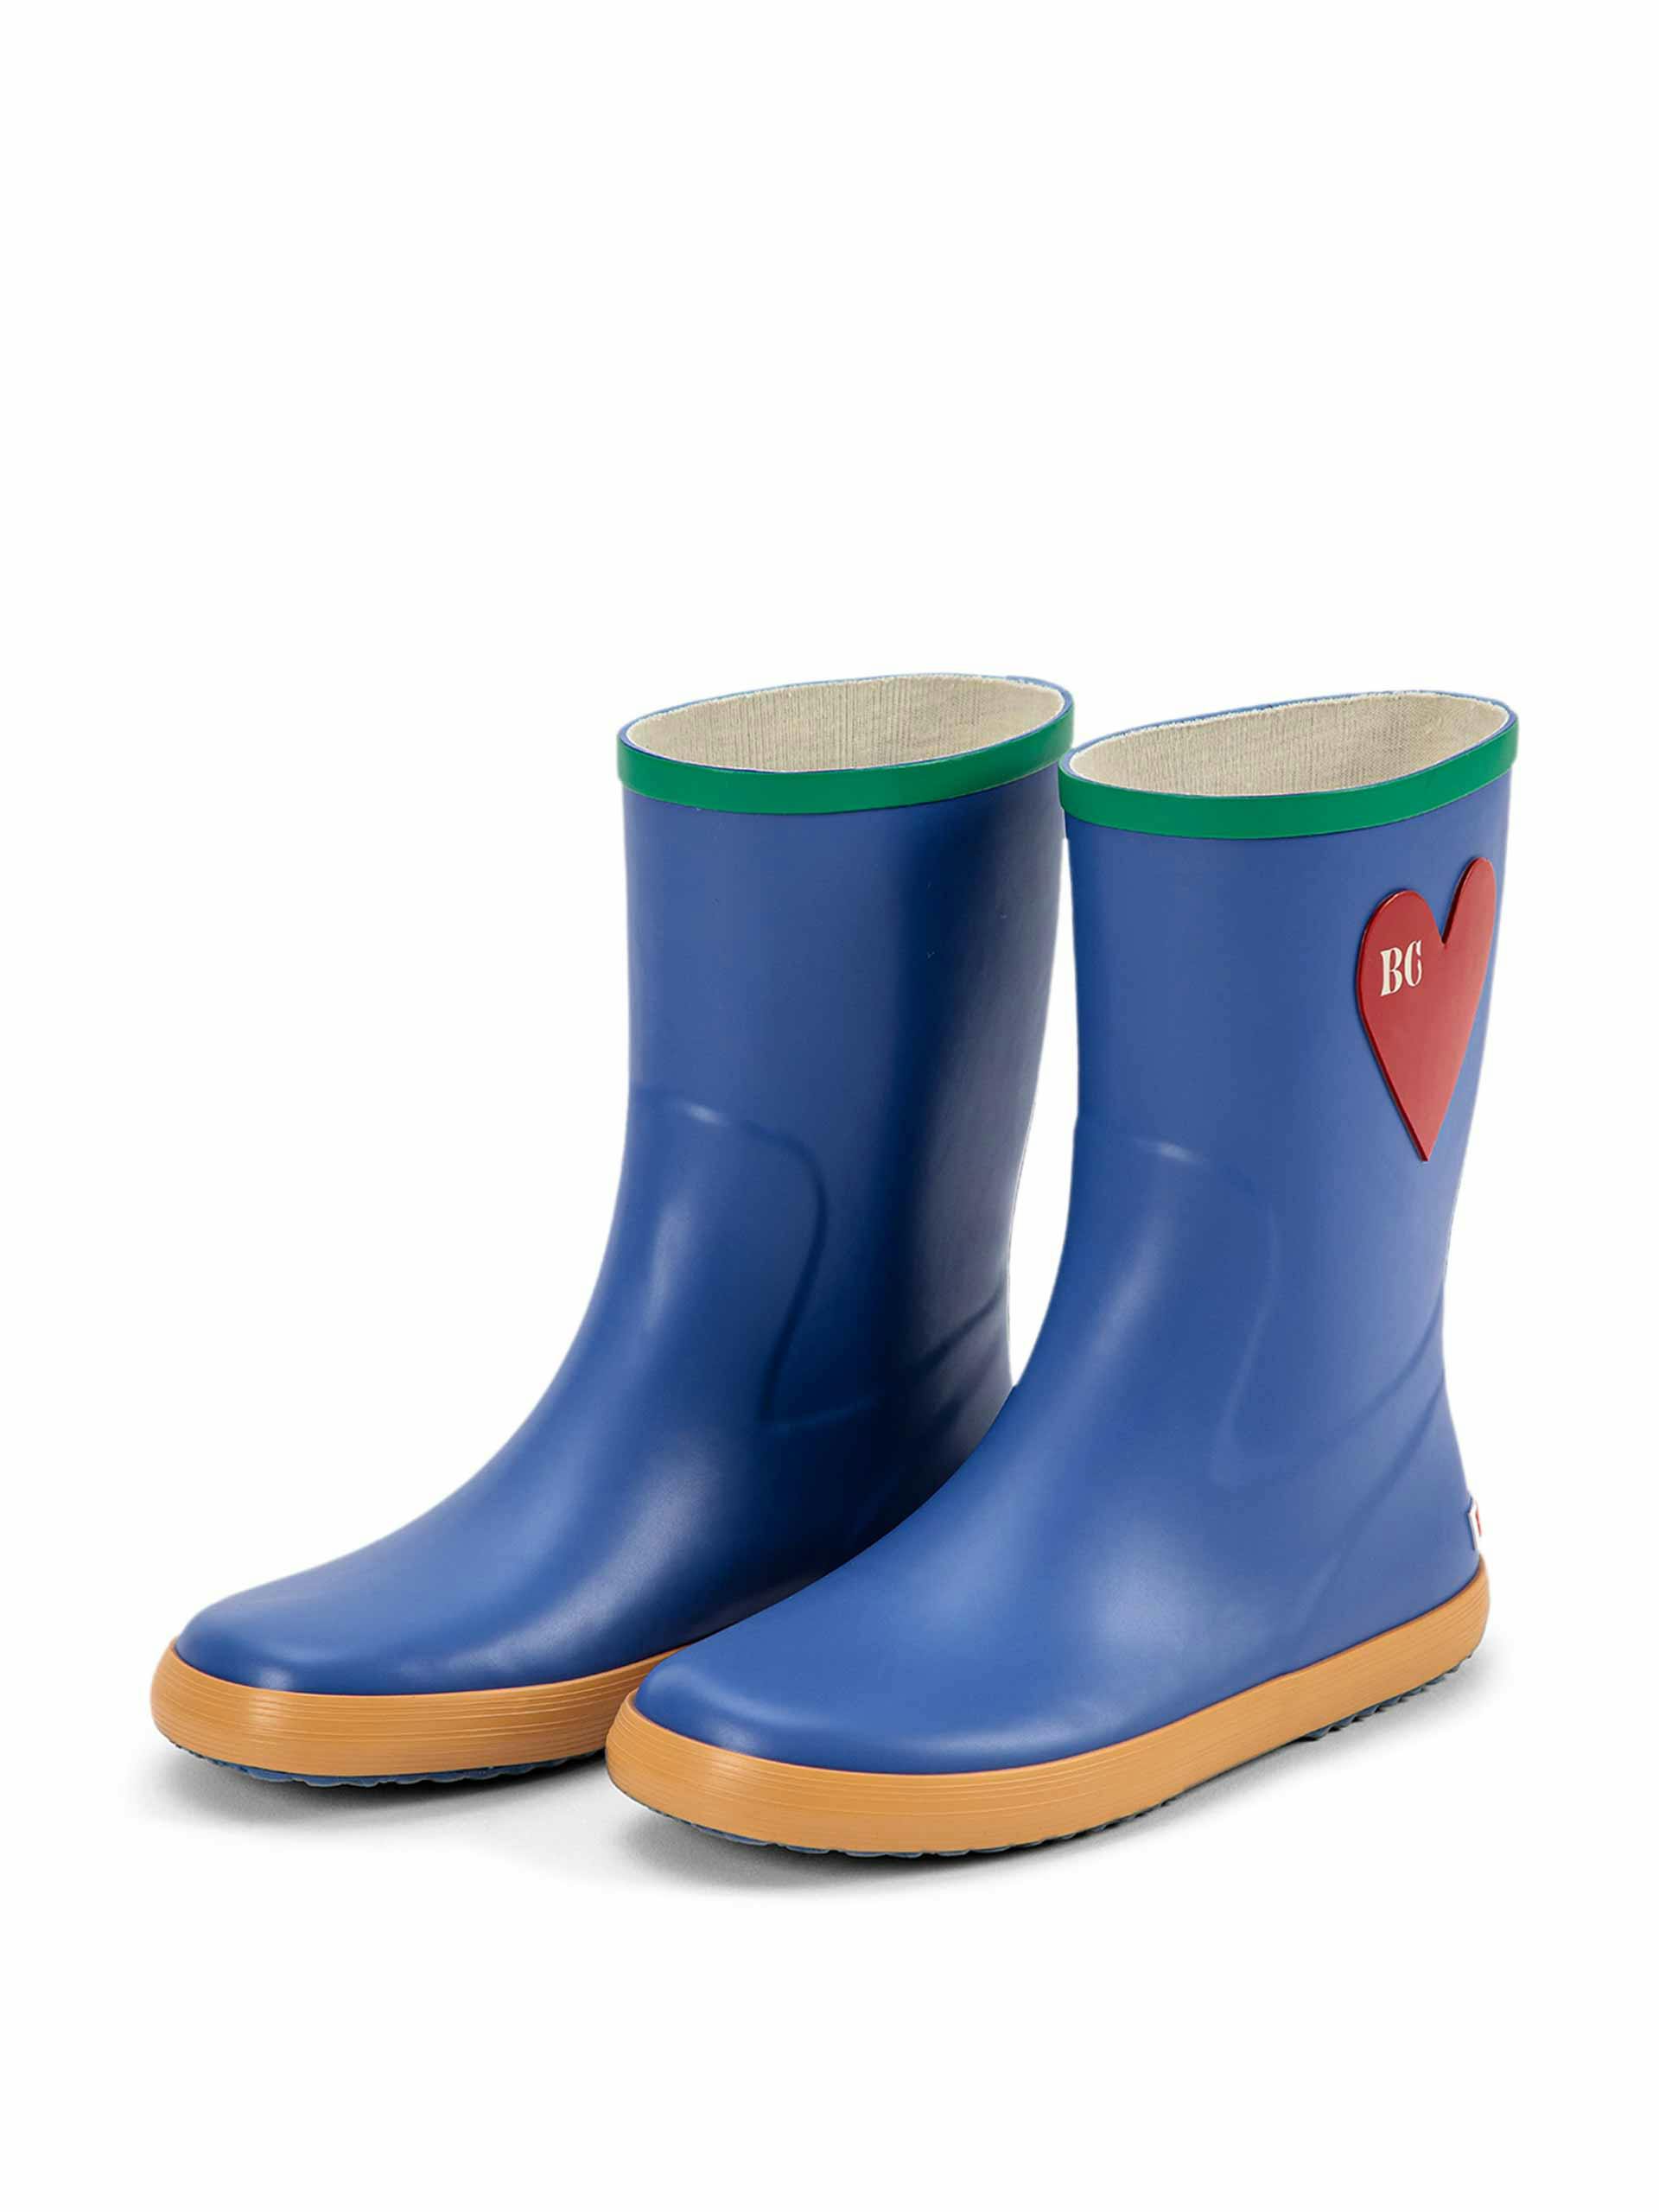 Heart rain boots